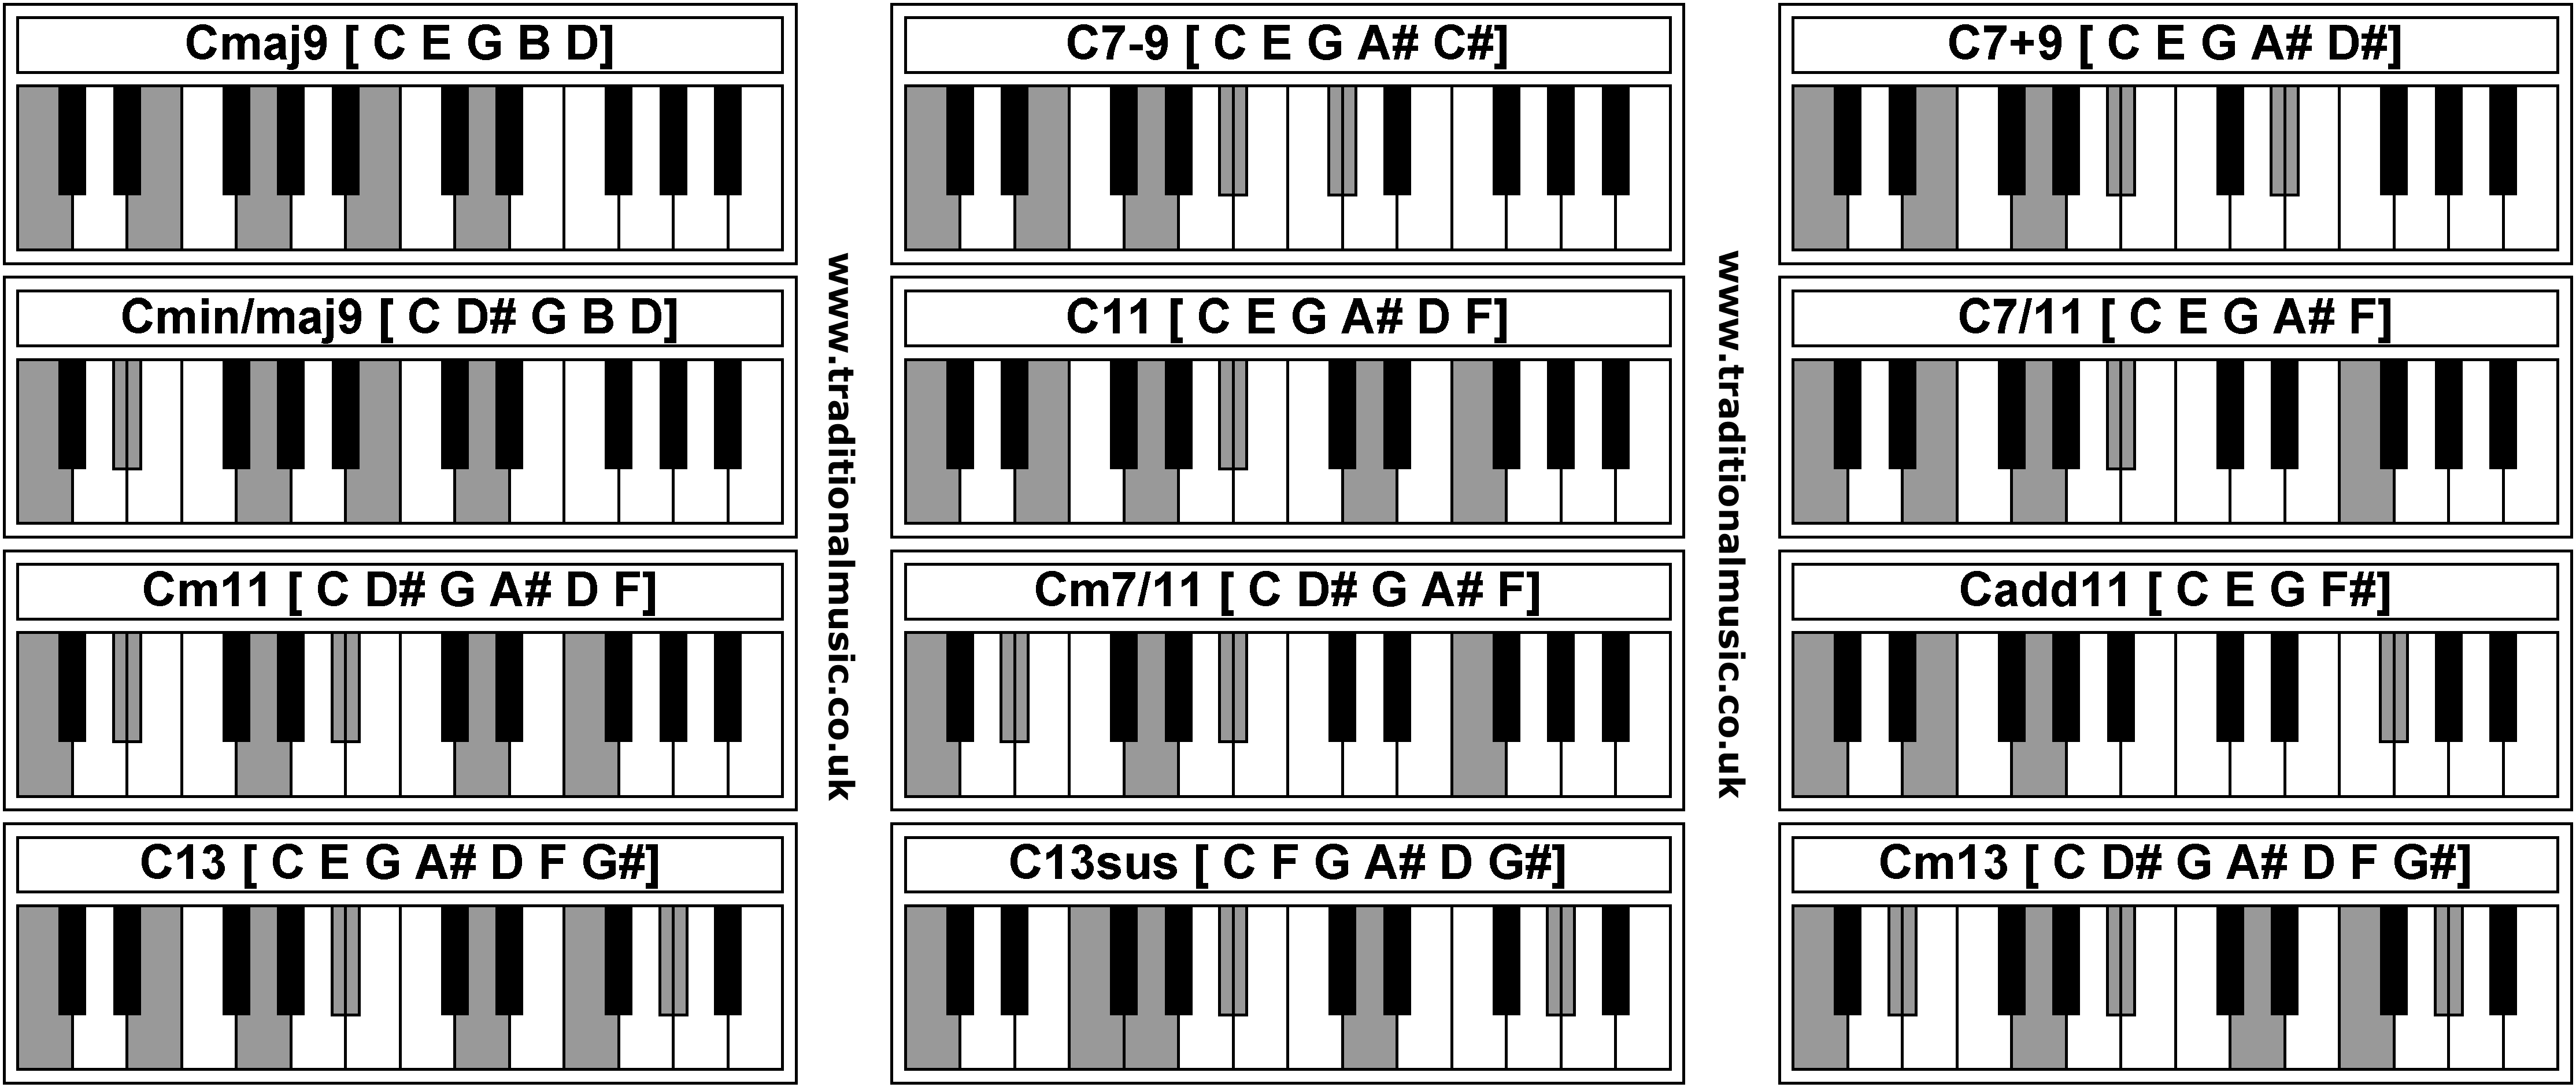 Piano Chords - Cmaj9  C7-9  C7+9  Cmin/maj9  C11  C7/11  Cm11  Cm7/11  Cadd11  C13  C13sus  Cm13 